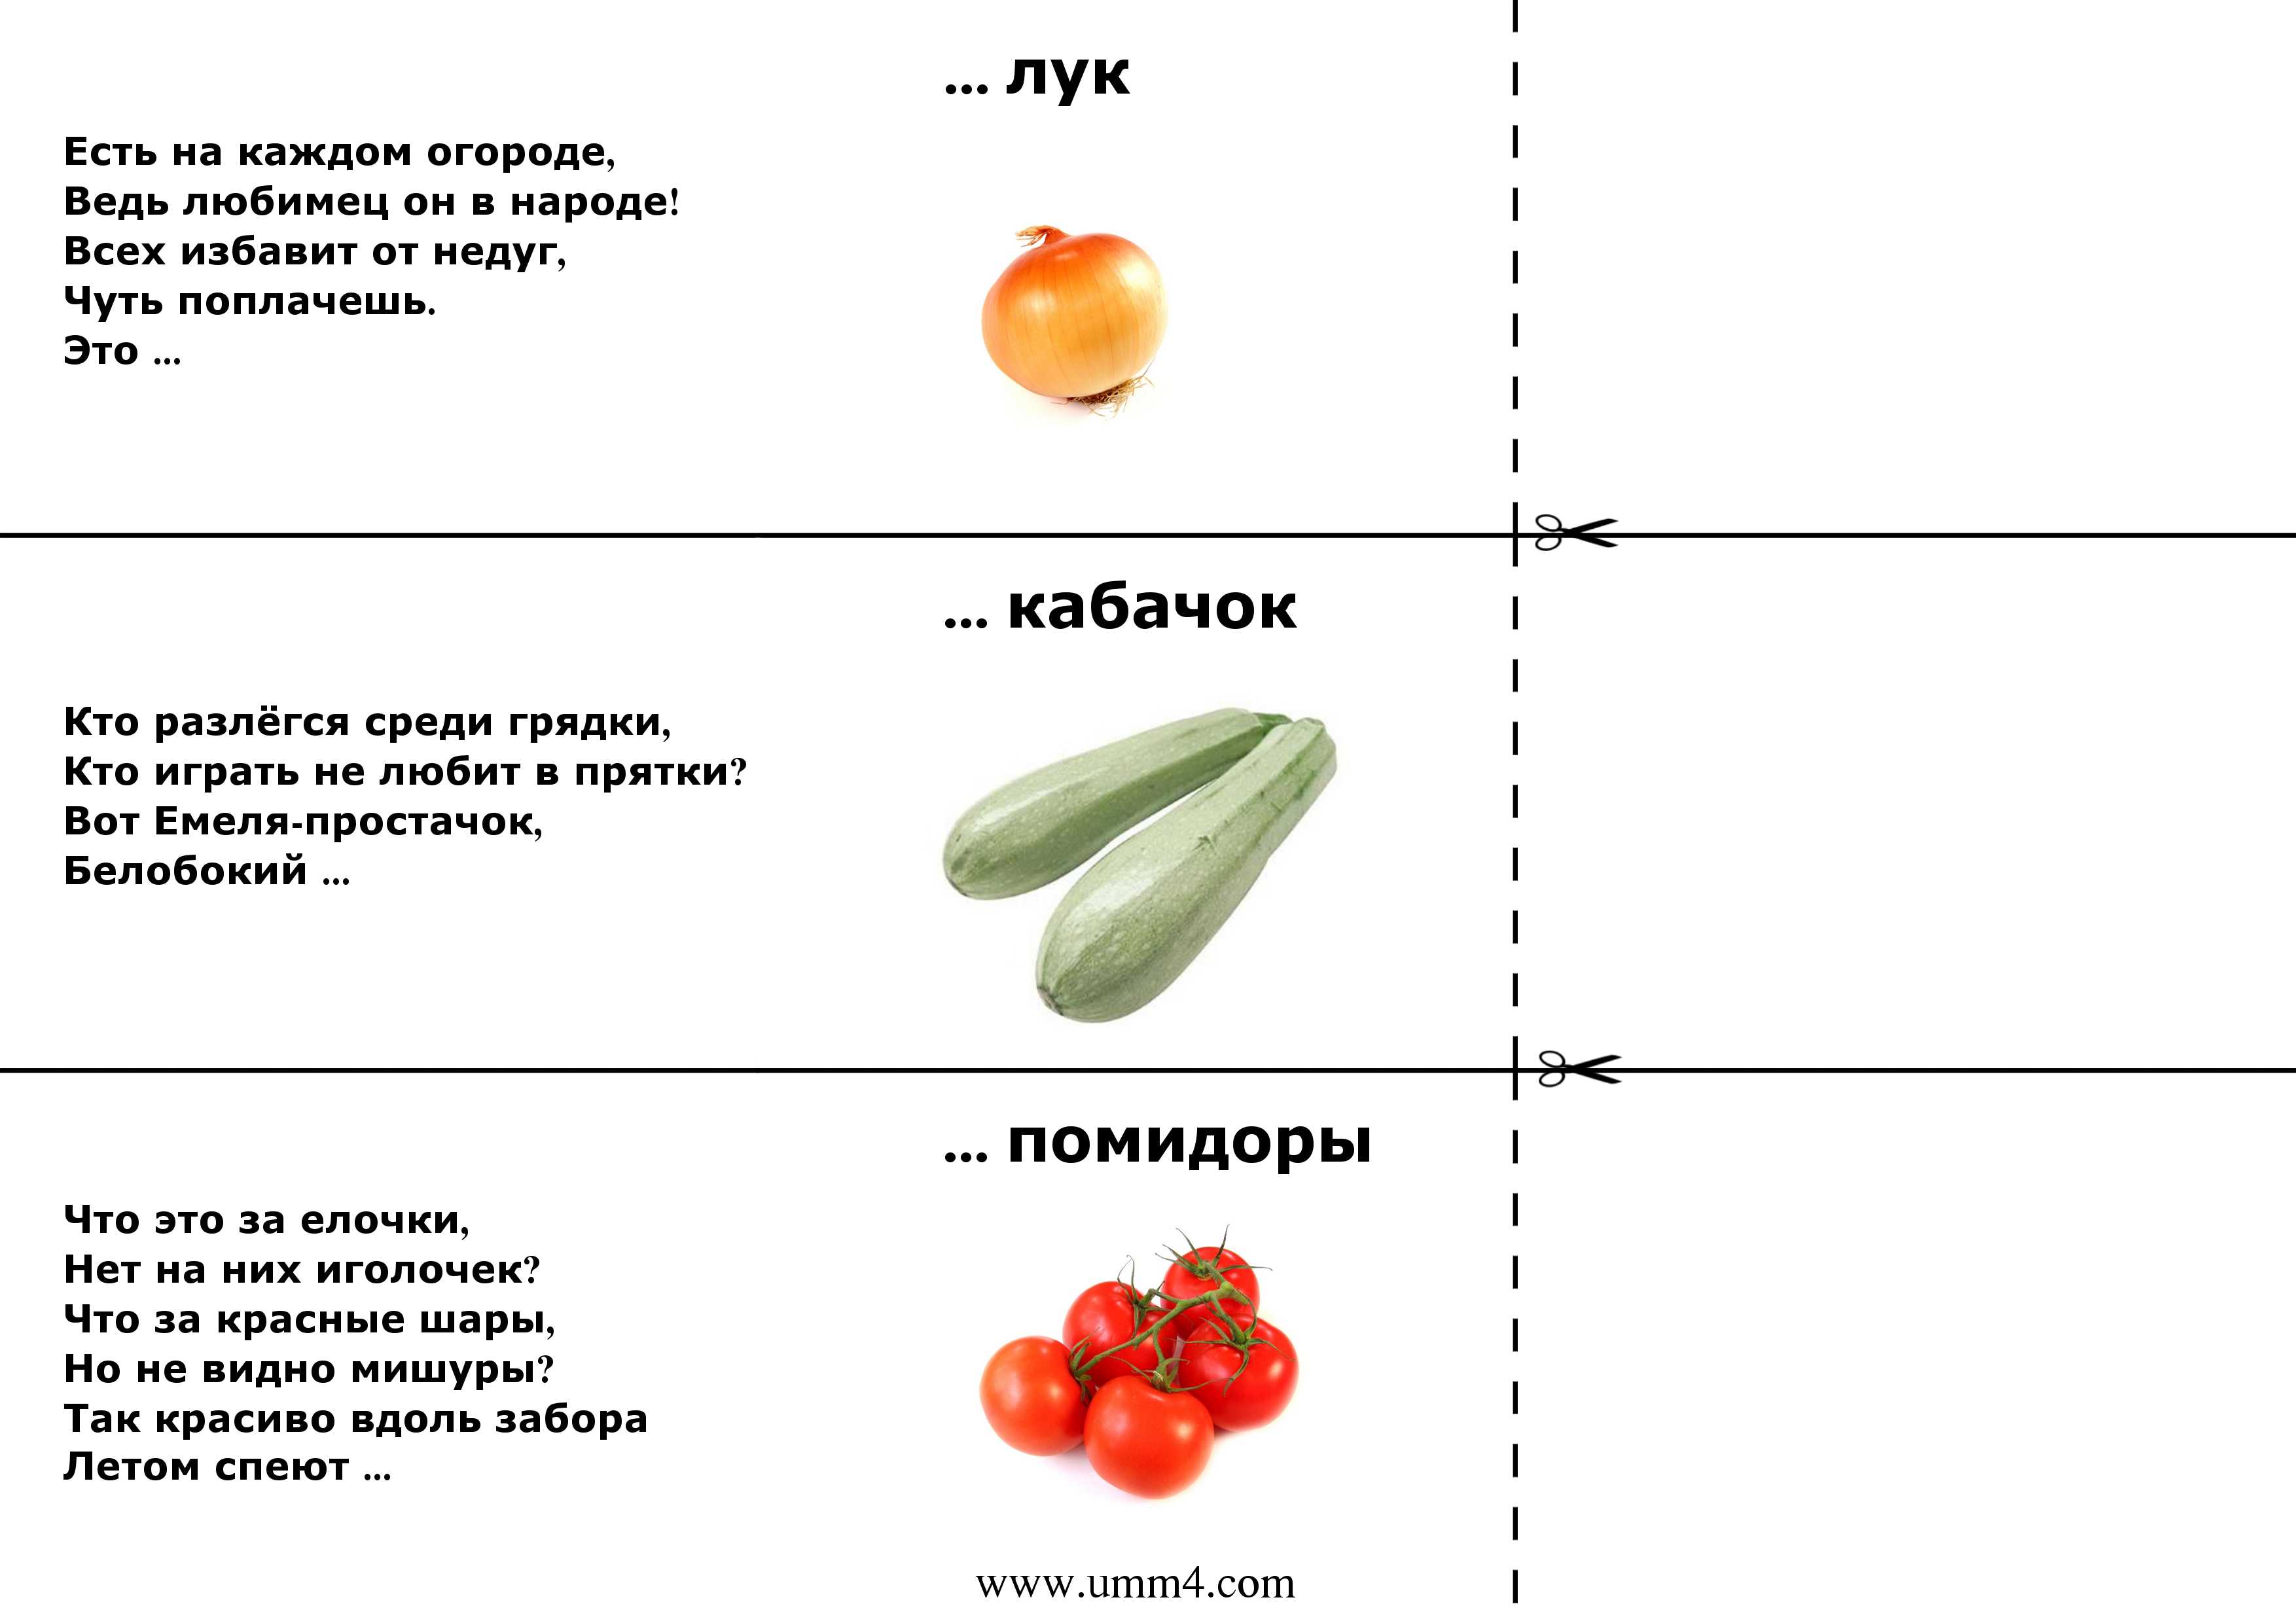 Загадки про овощи и фрукты для детей с ответами – о плодах, ягодах и витаминах